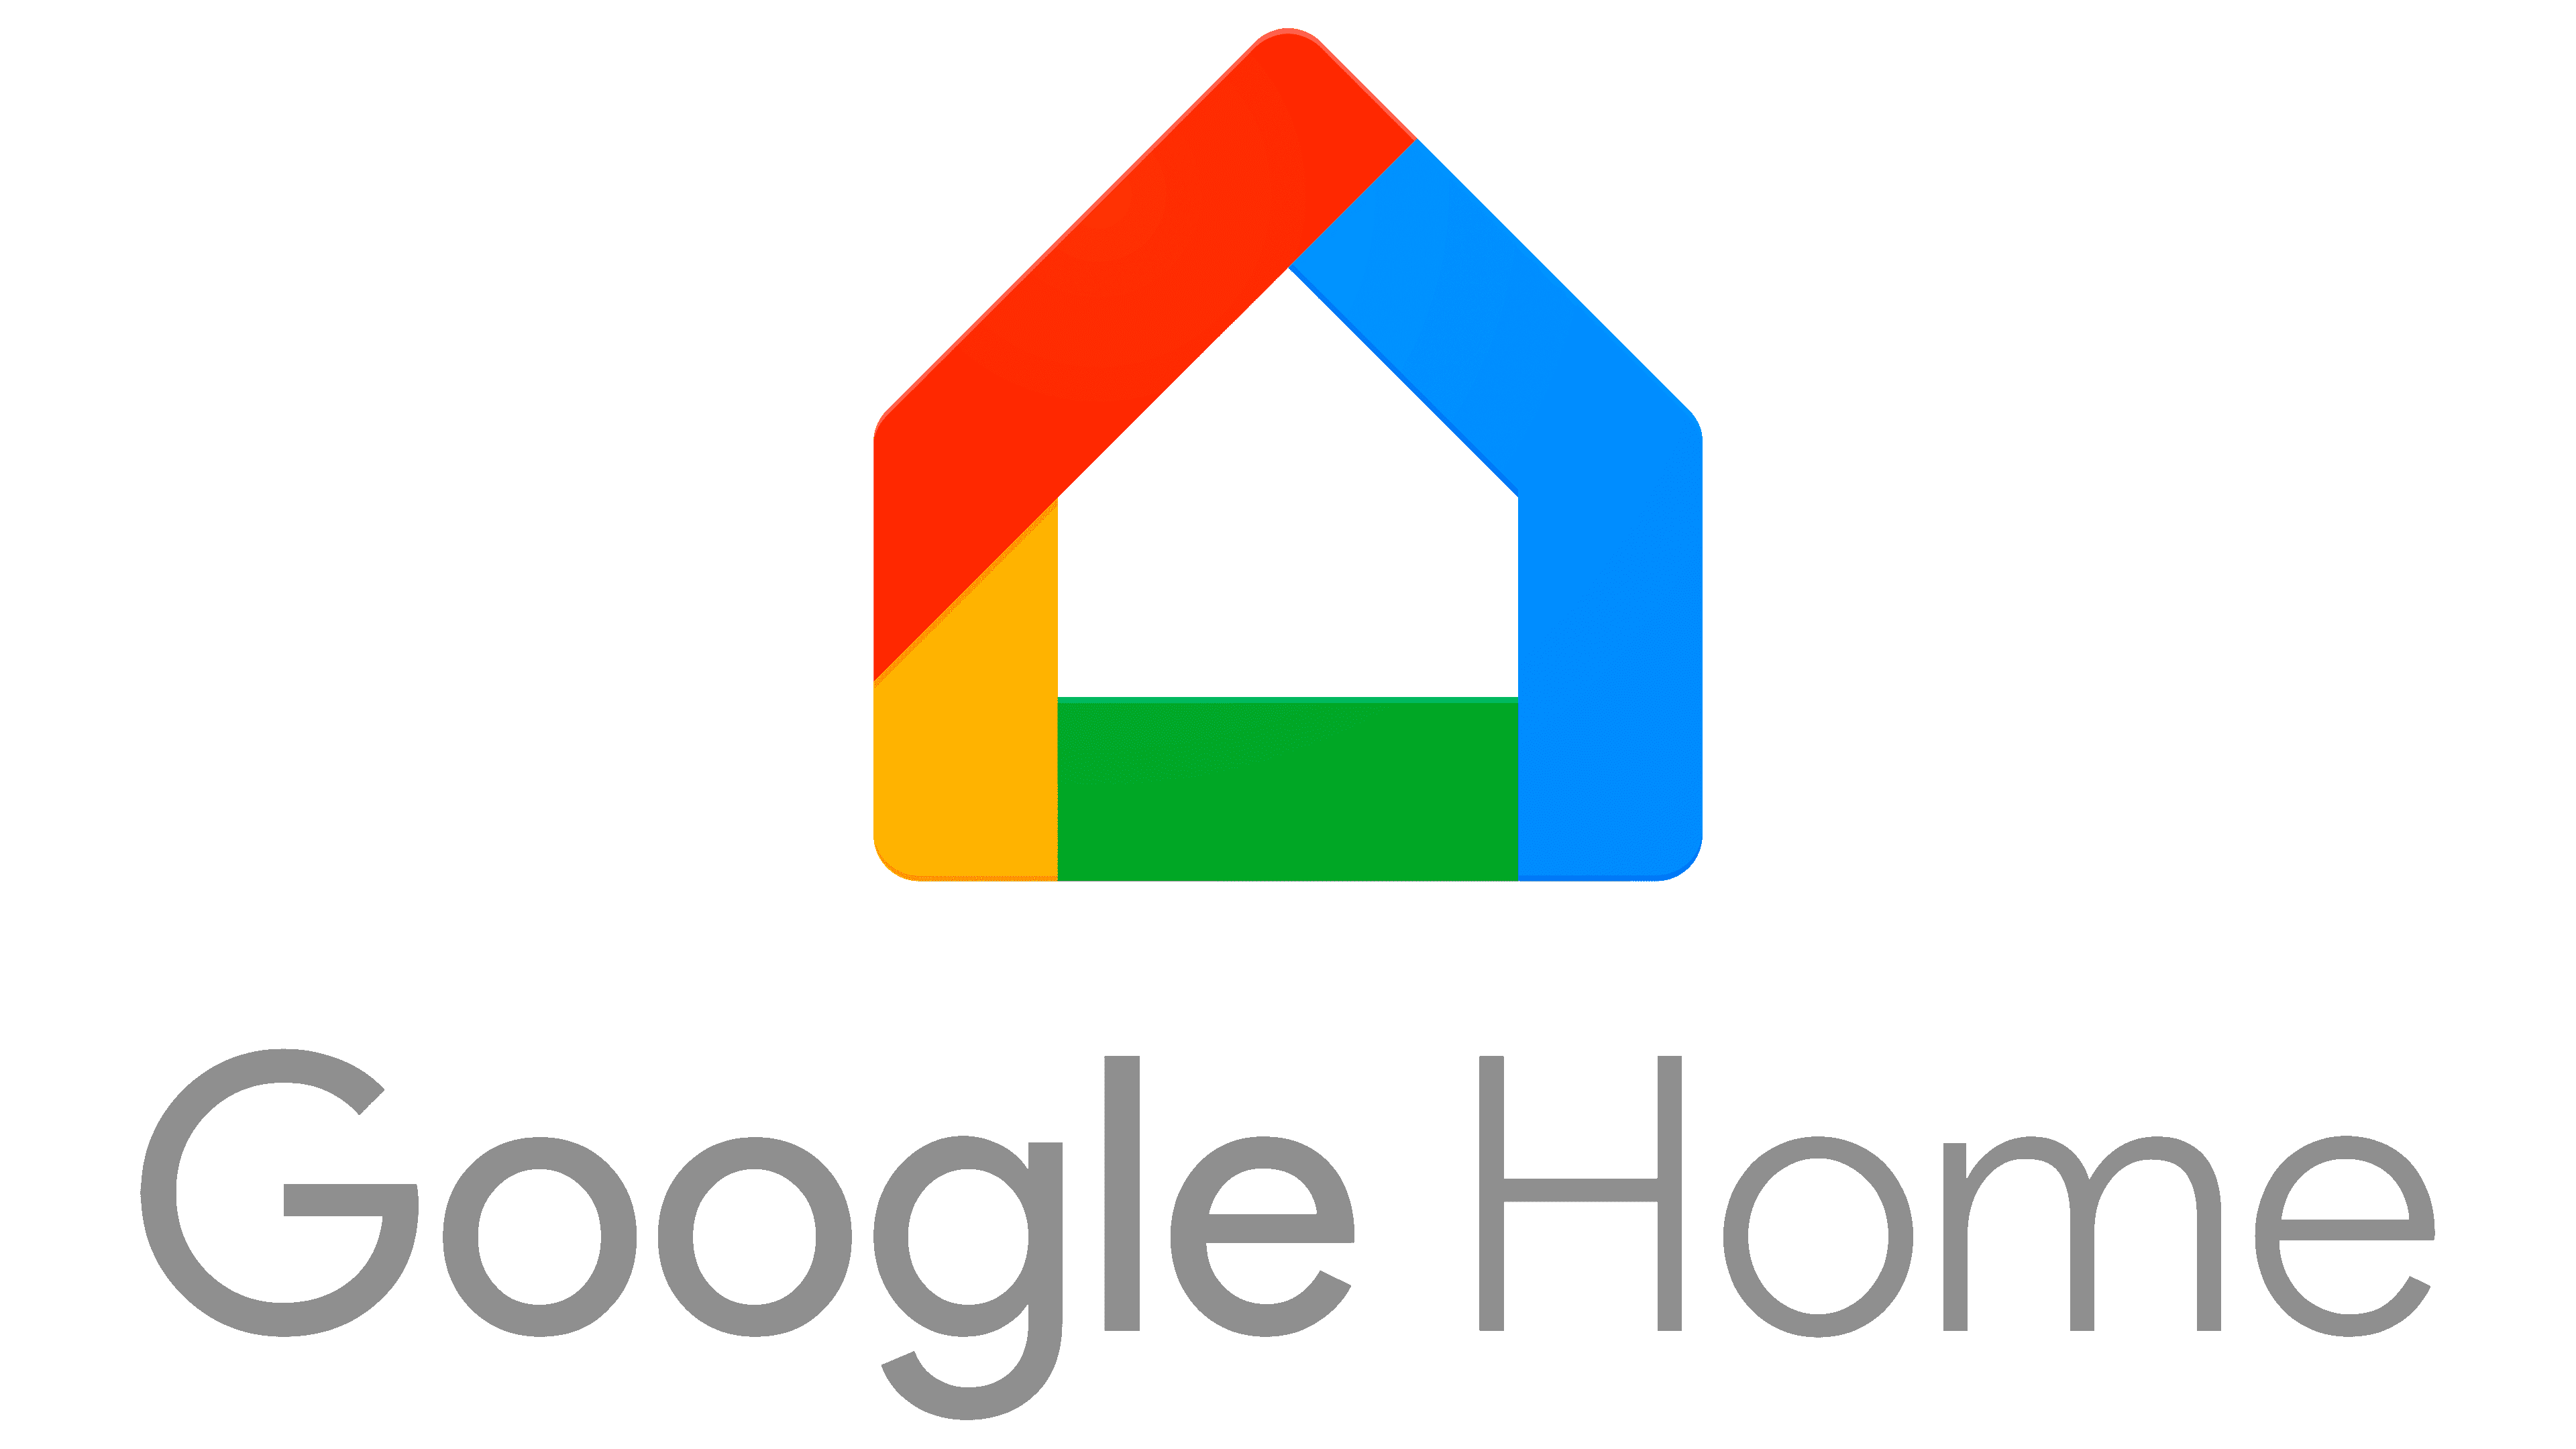 Google home logo